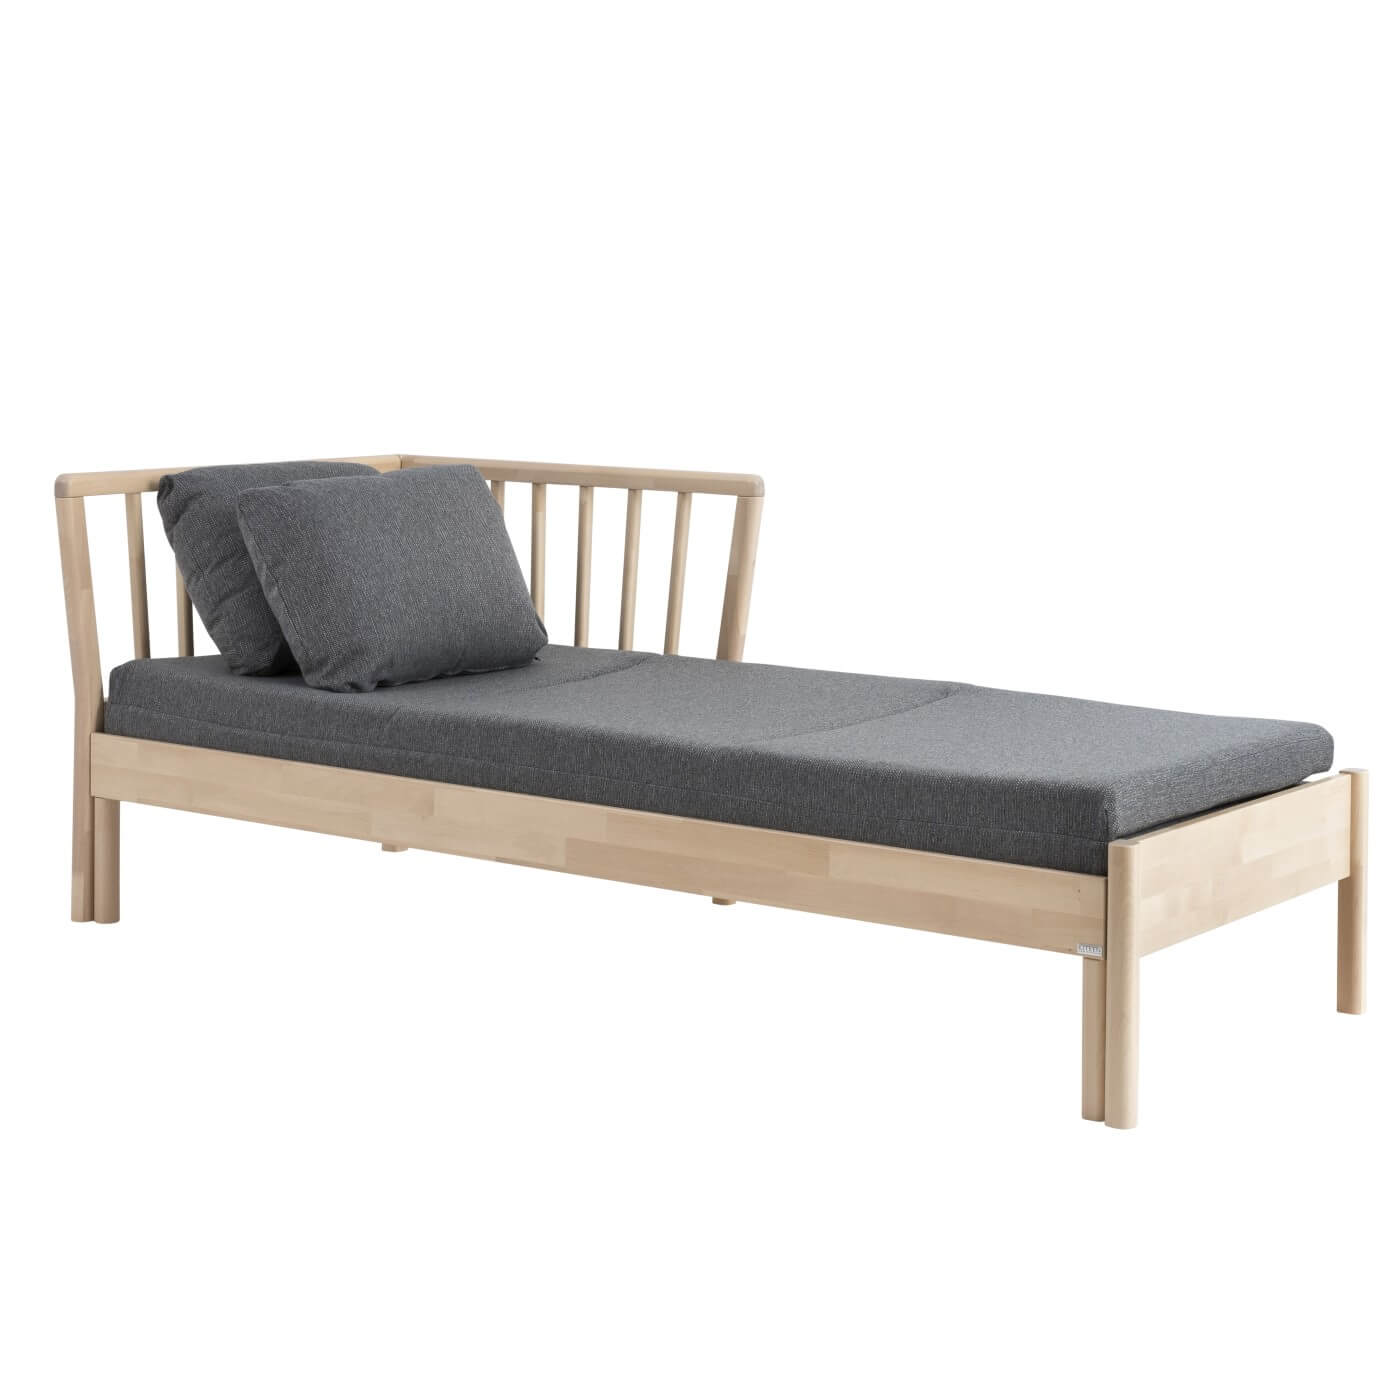 Szezlong nowoczesny FRANZ, rozkładany do salonu, z litego drewna brzozy, szary materac i 2 poduszki. Skandynawski design